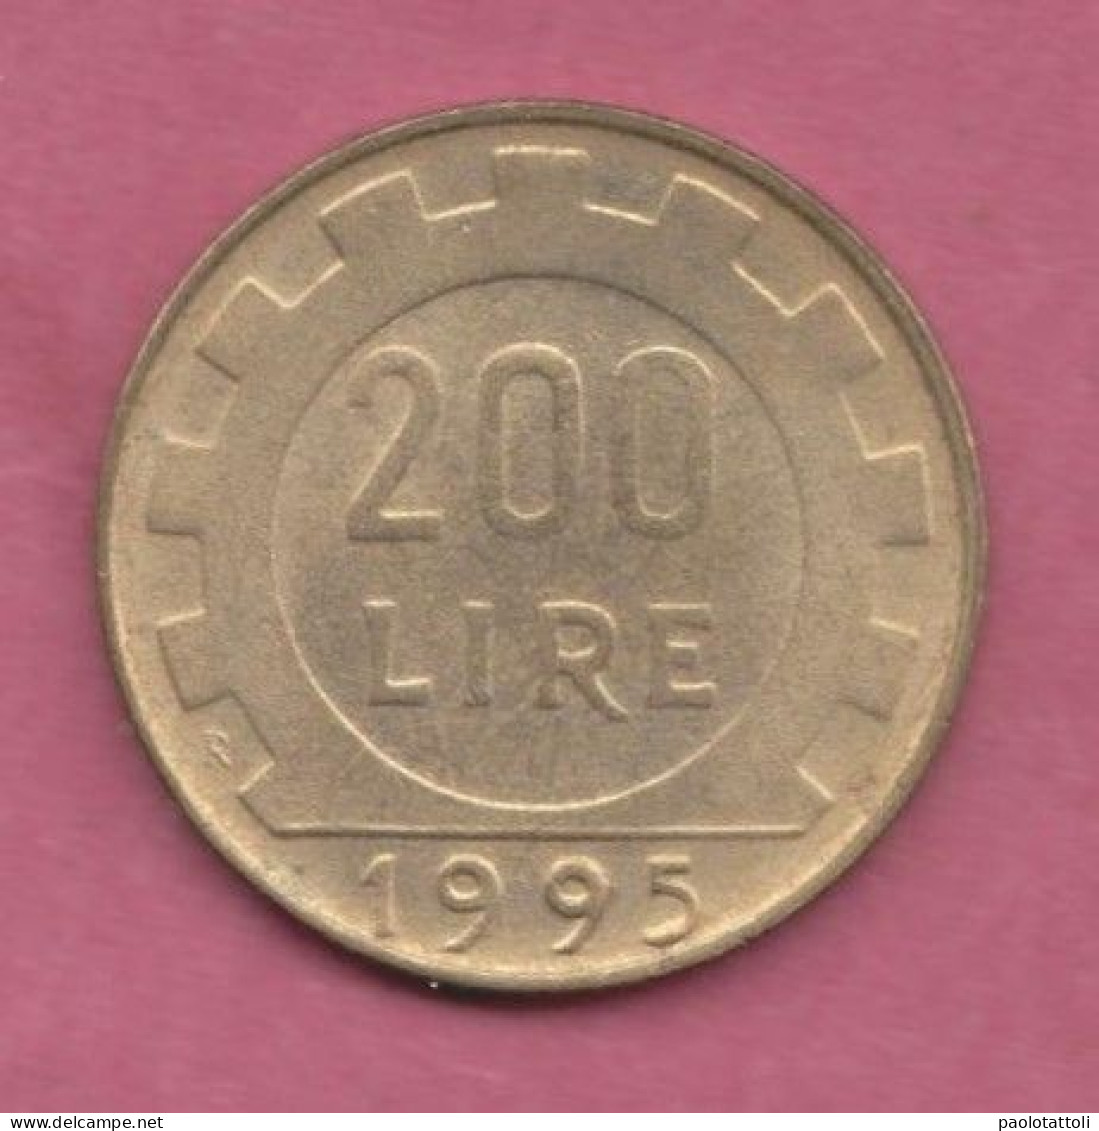 Italia, 1995- 200 Lire. -Bronzital- Obverse Allegory Of The Italian Repubblic . - 200 Liras